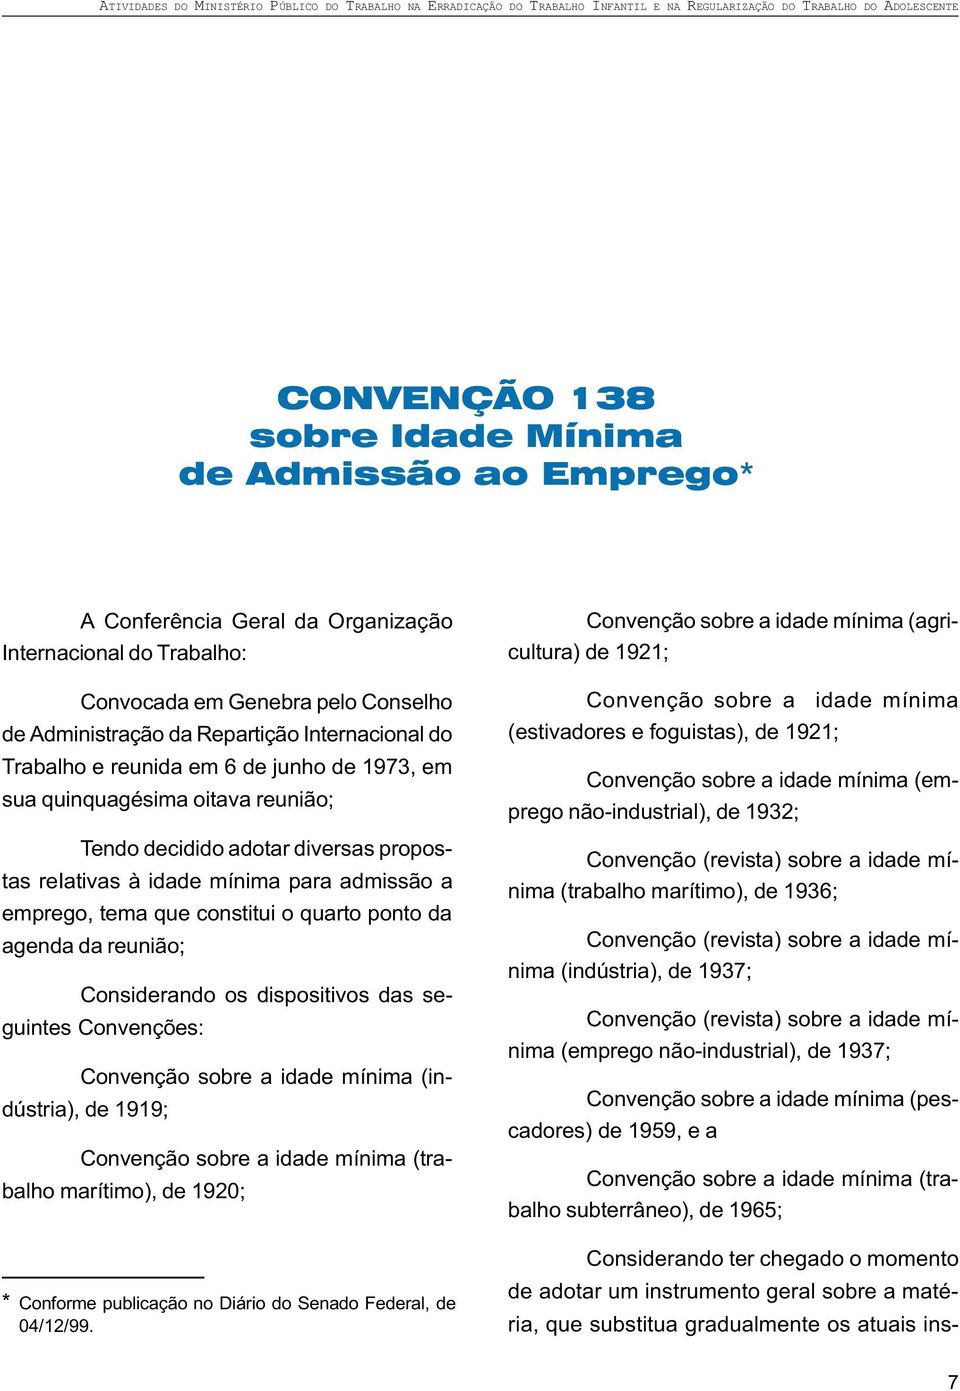 quarto ponto da agenda da reunião; Considerando os dispositivos das seguintes Convenções: Convenção sobre a idade mínima (indústria), de 1919; Convenção sobre a idade mínima (trabalho marítimo), de